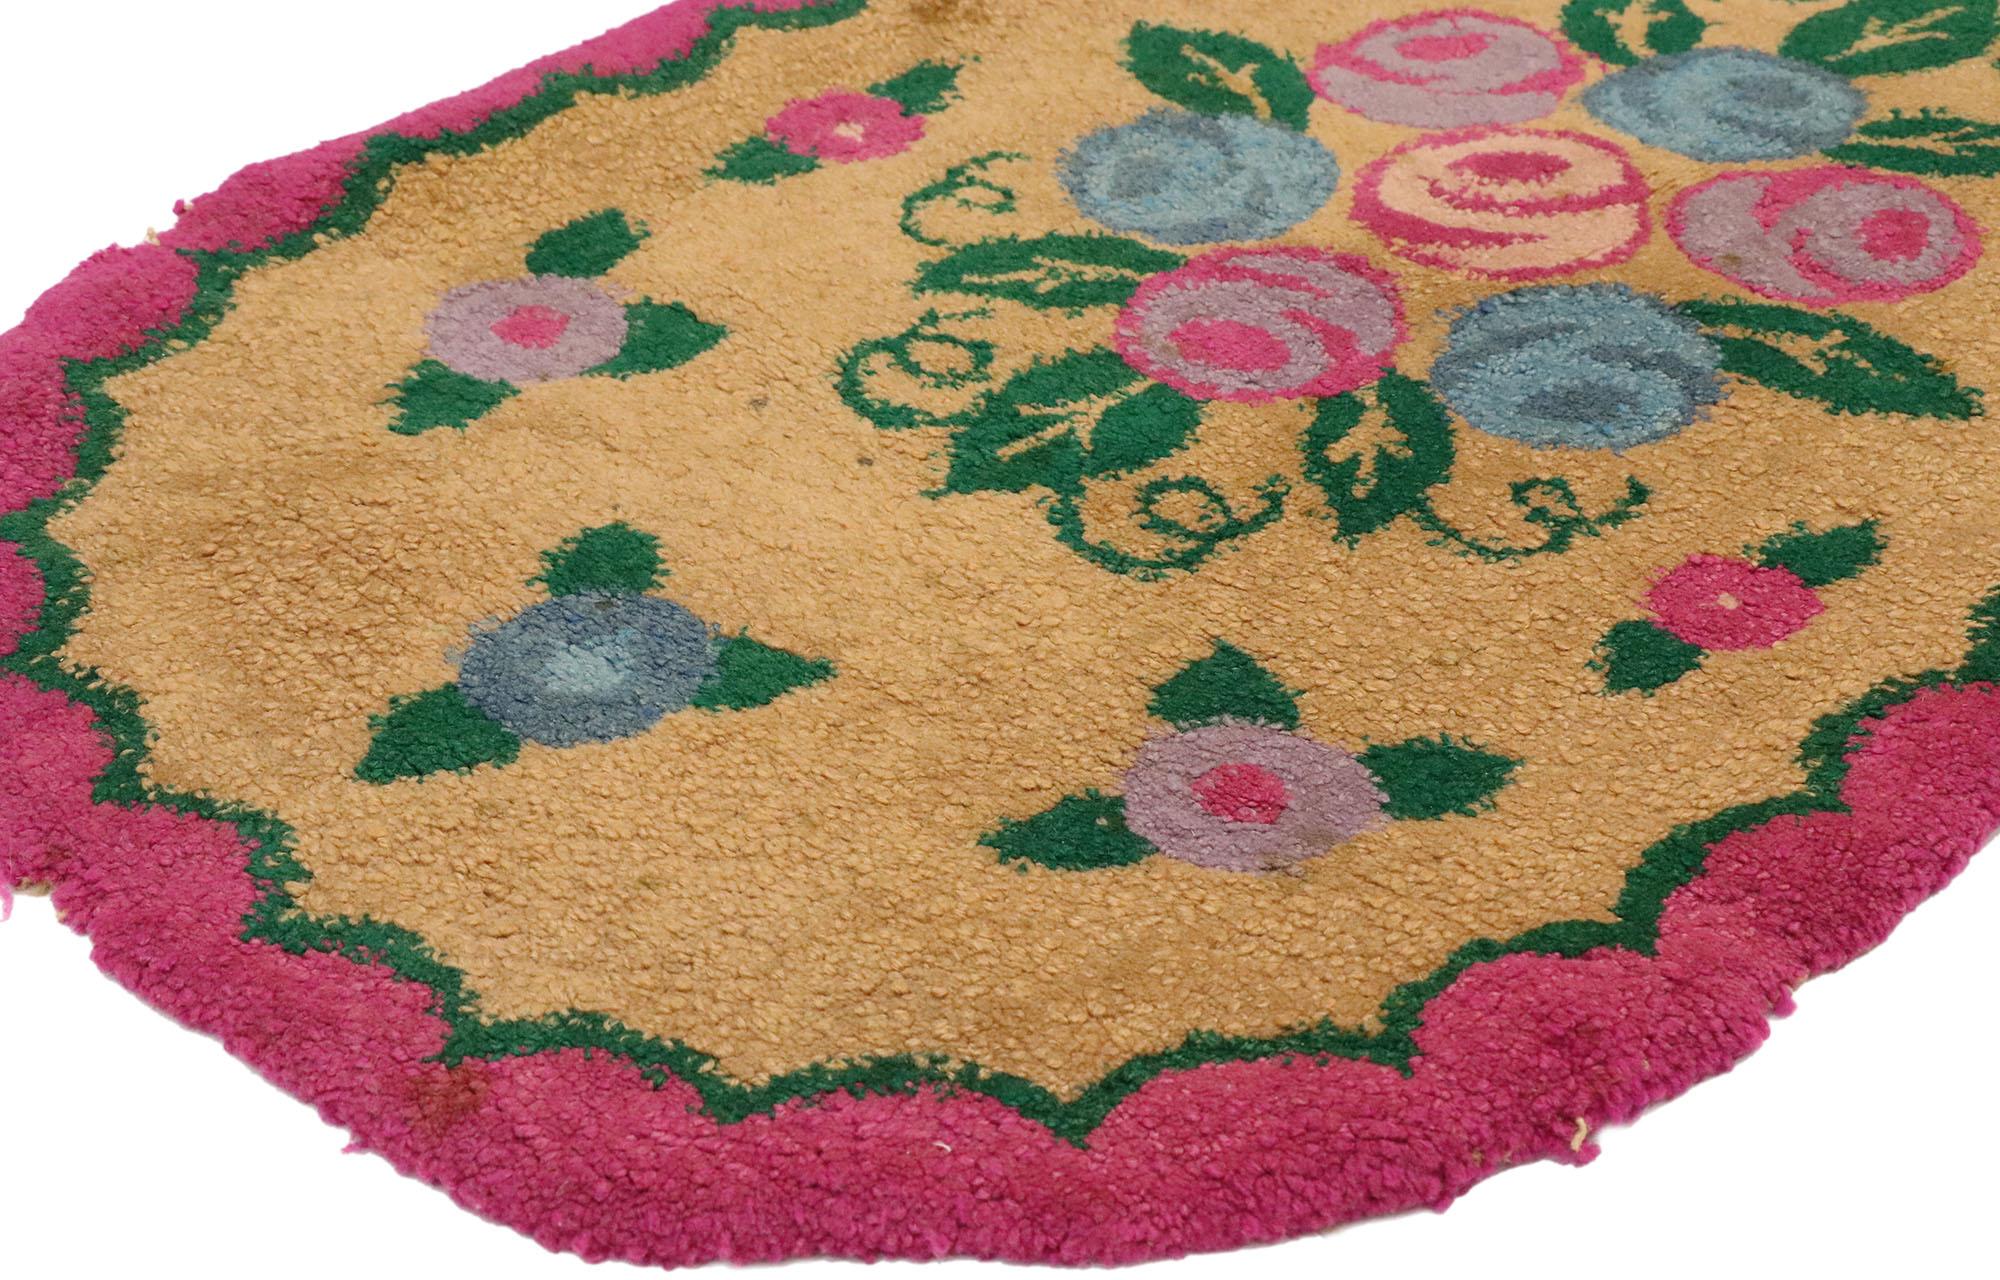 74353, ancien tapis ovale américain à fleurs crochetées avec style Chintz de la campagne anglaise 01'11 X 03'06. S'inspirant de Mario Buatta, du style Chintz et d'éléments de design du XVIIIe siècle en France, ce tapis crocheté floral américain